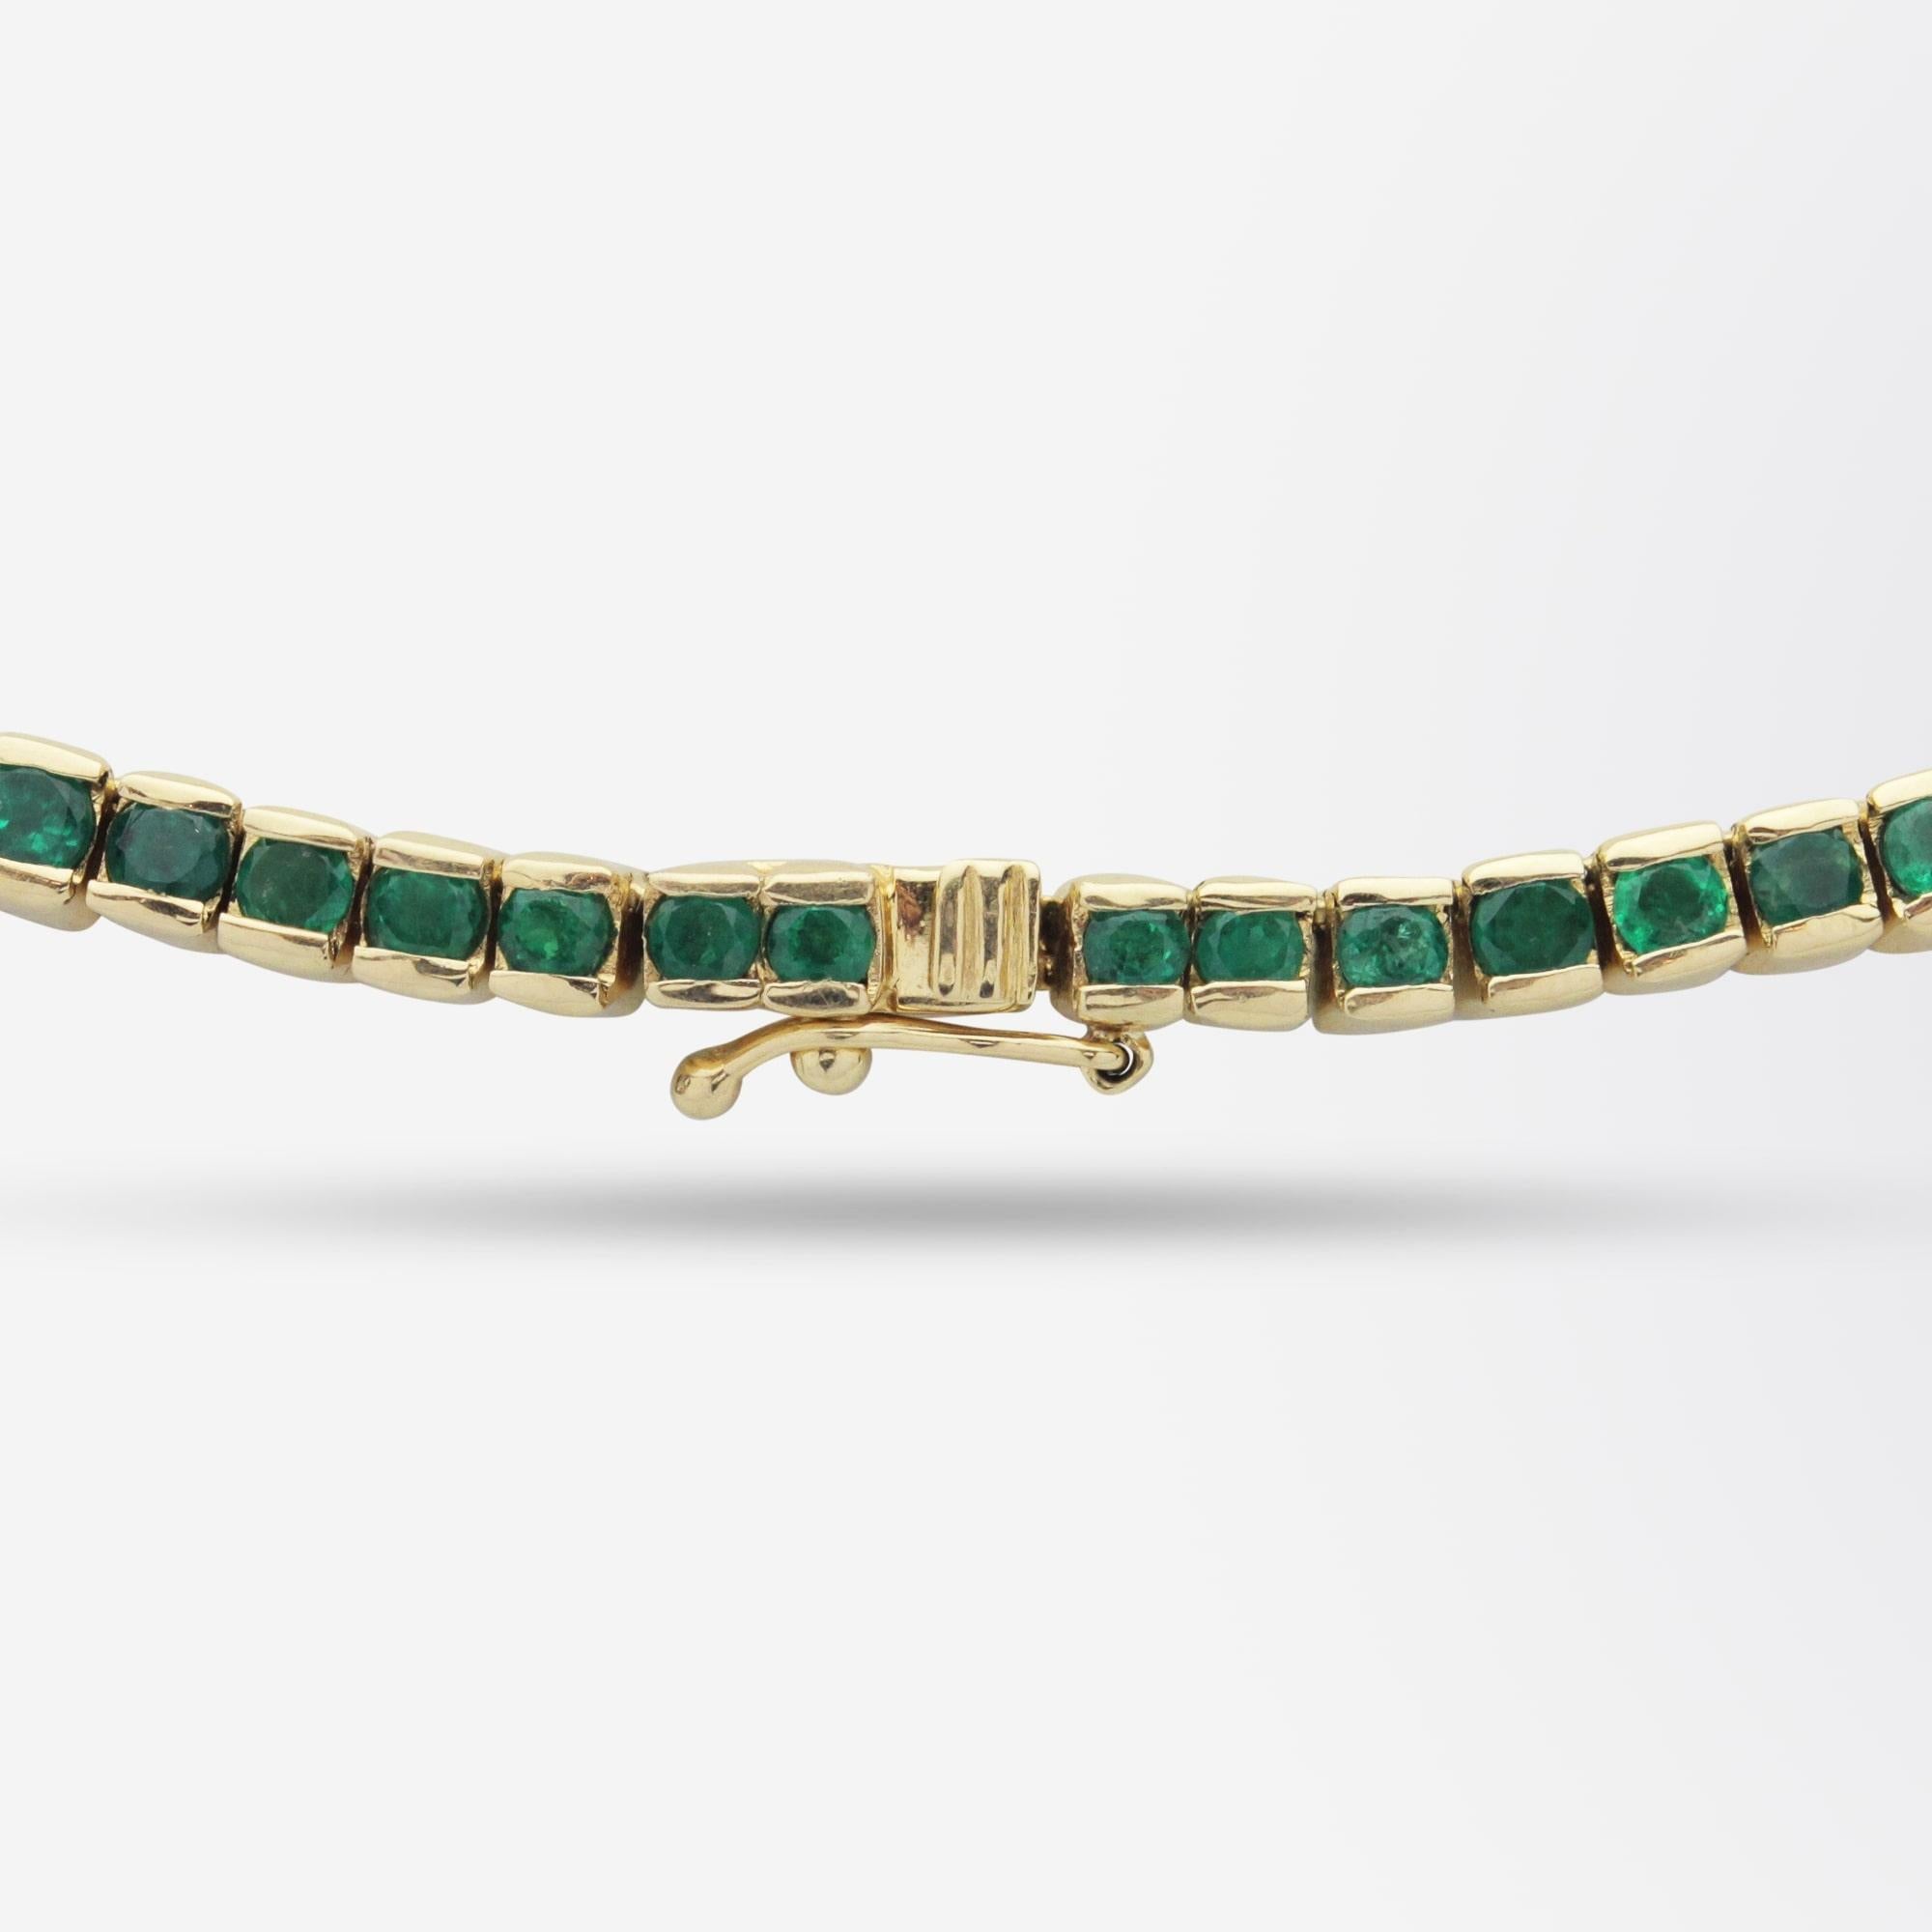 Modern 20 Carat Emerald Riviere Necklace Set in 18 Karat Gold